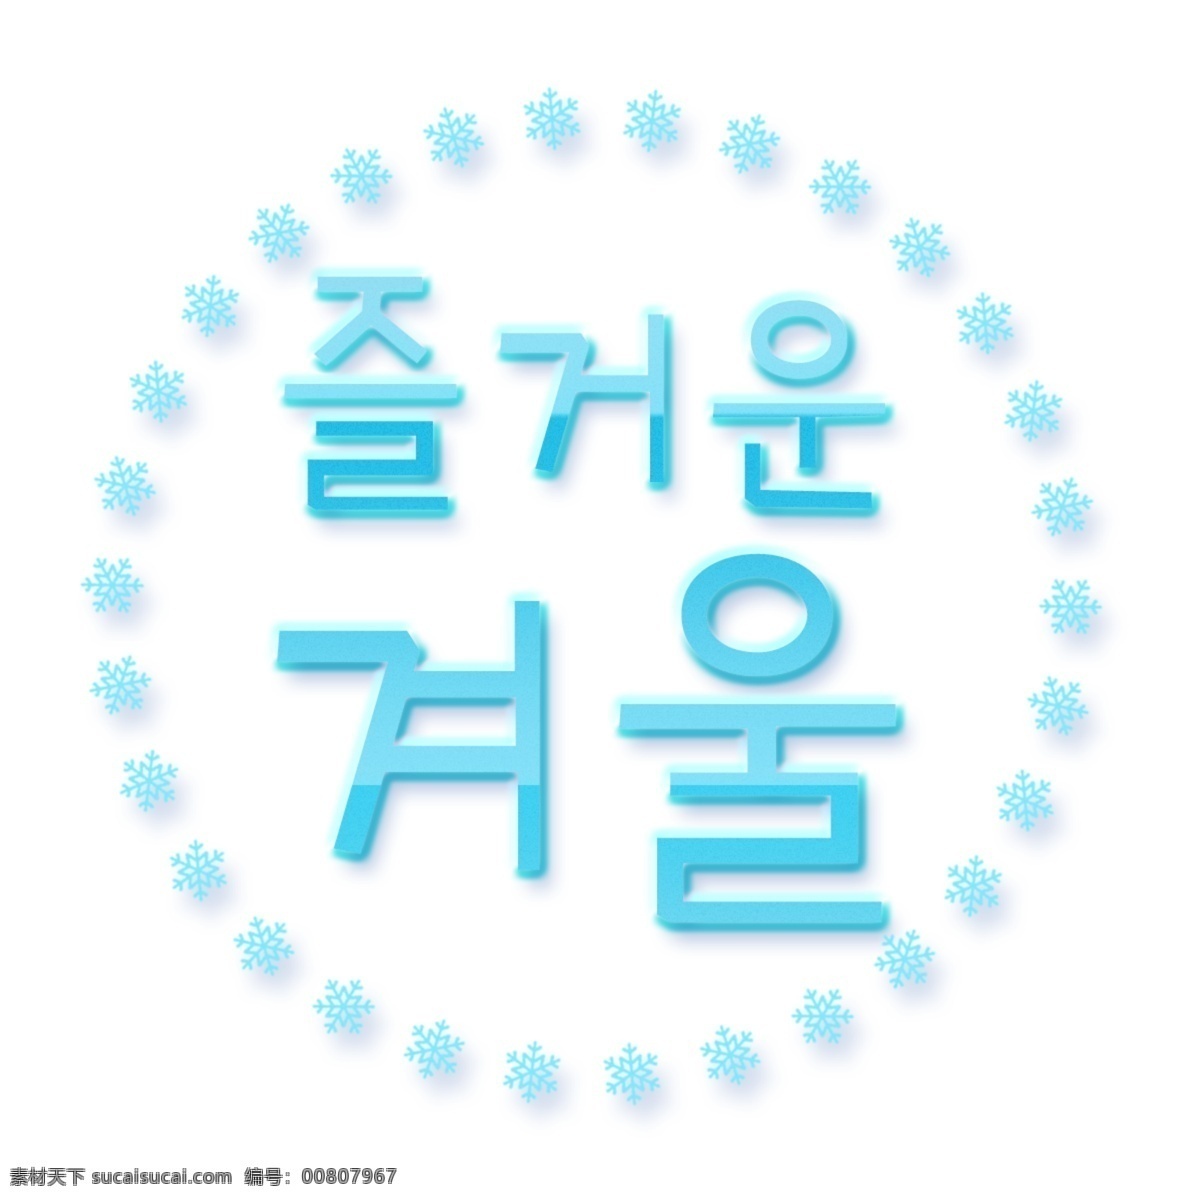 学习的乐趣 字符 字形 韩国人 韩国字体 冬季 快乐的冬天 白色和蓝色